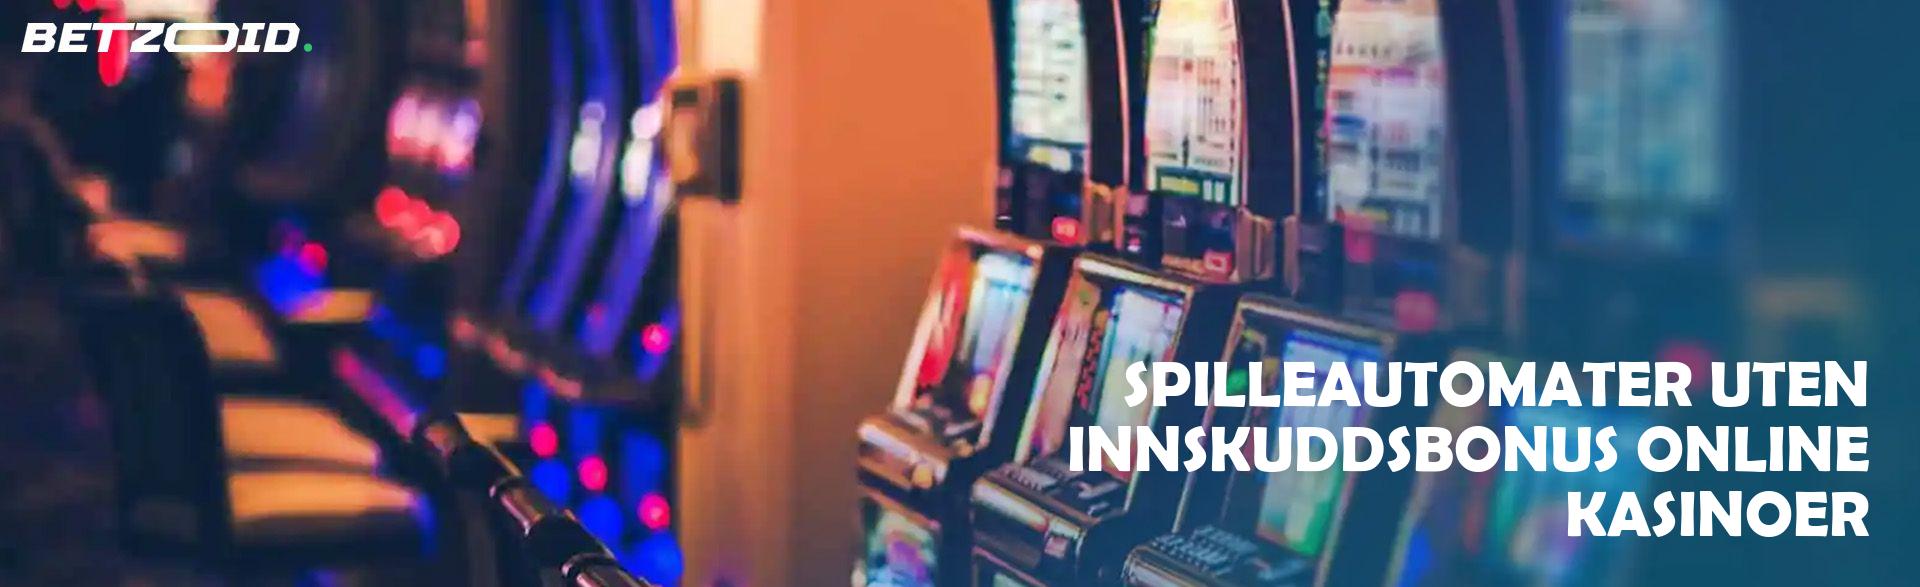 Spilleautomater uten Innskuddsbonus Online Kasinoer.